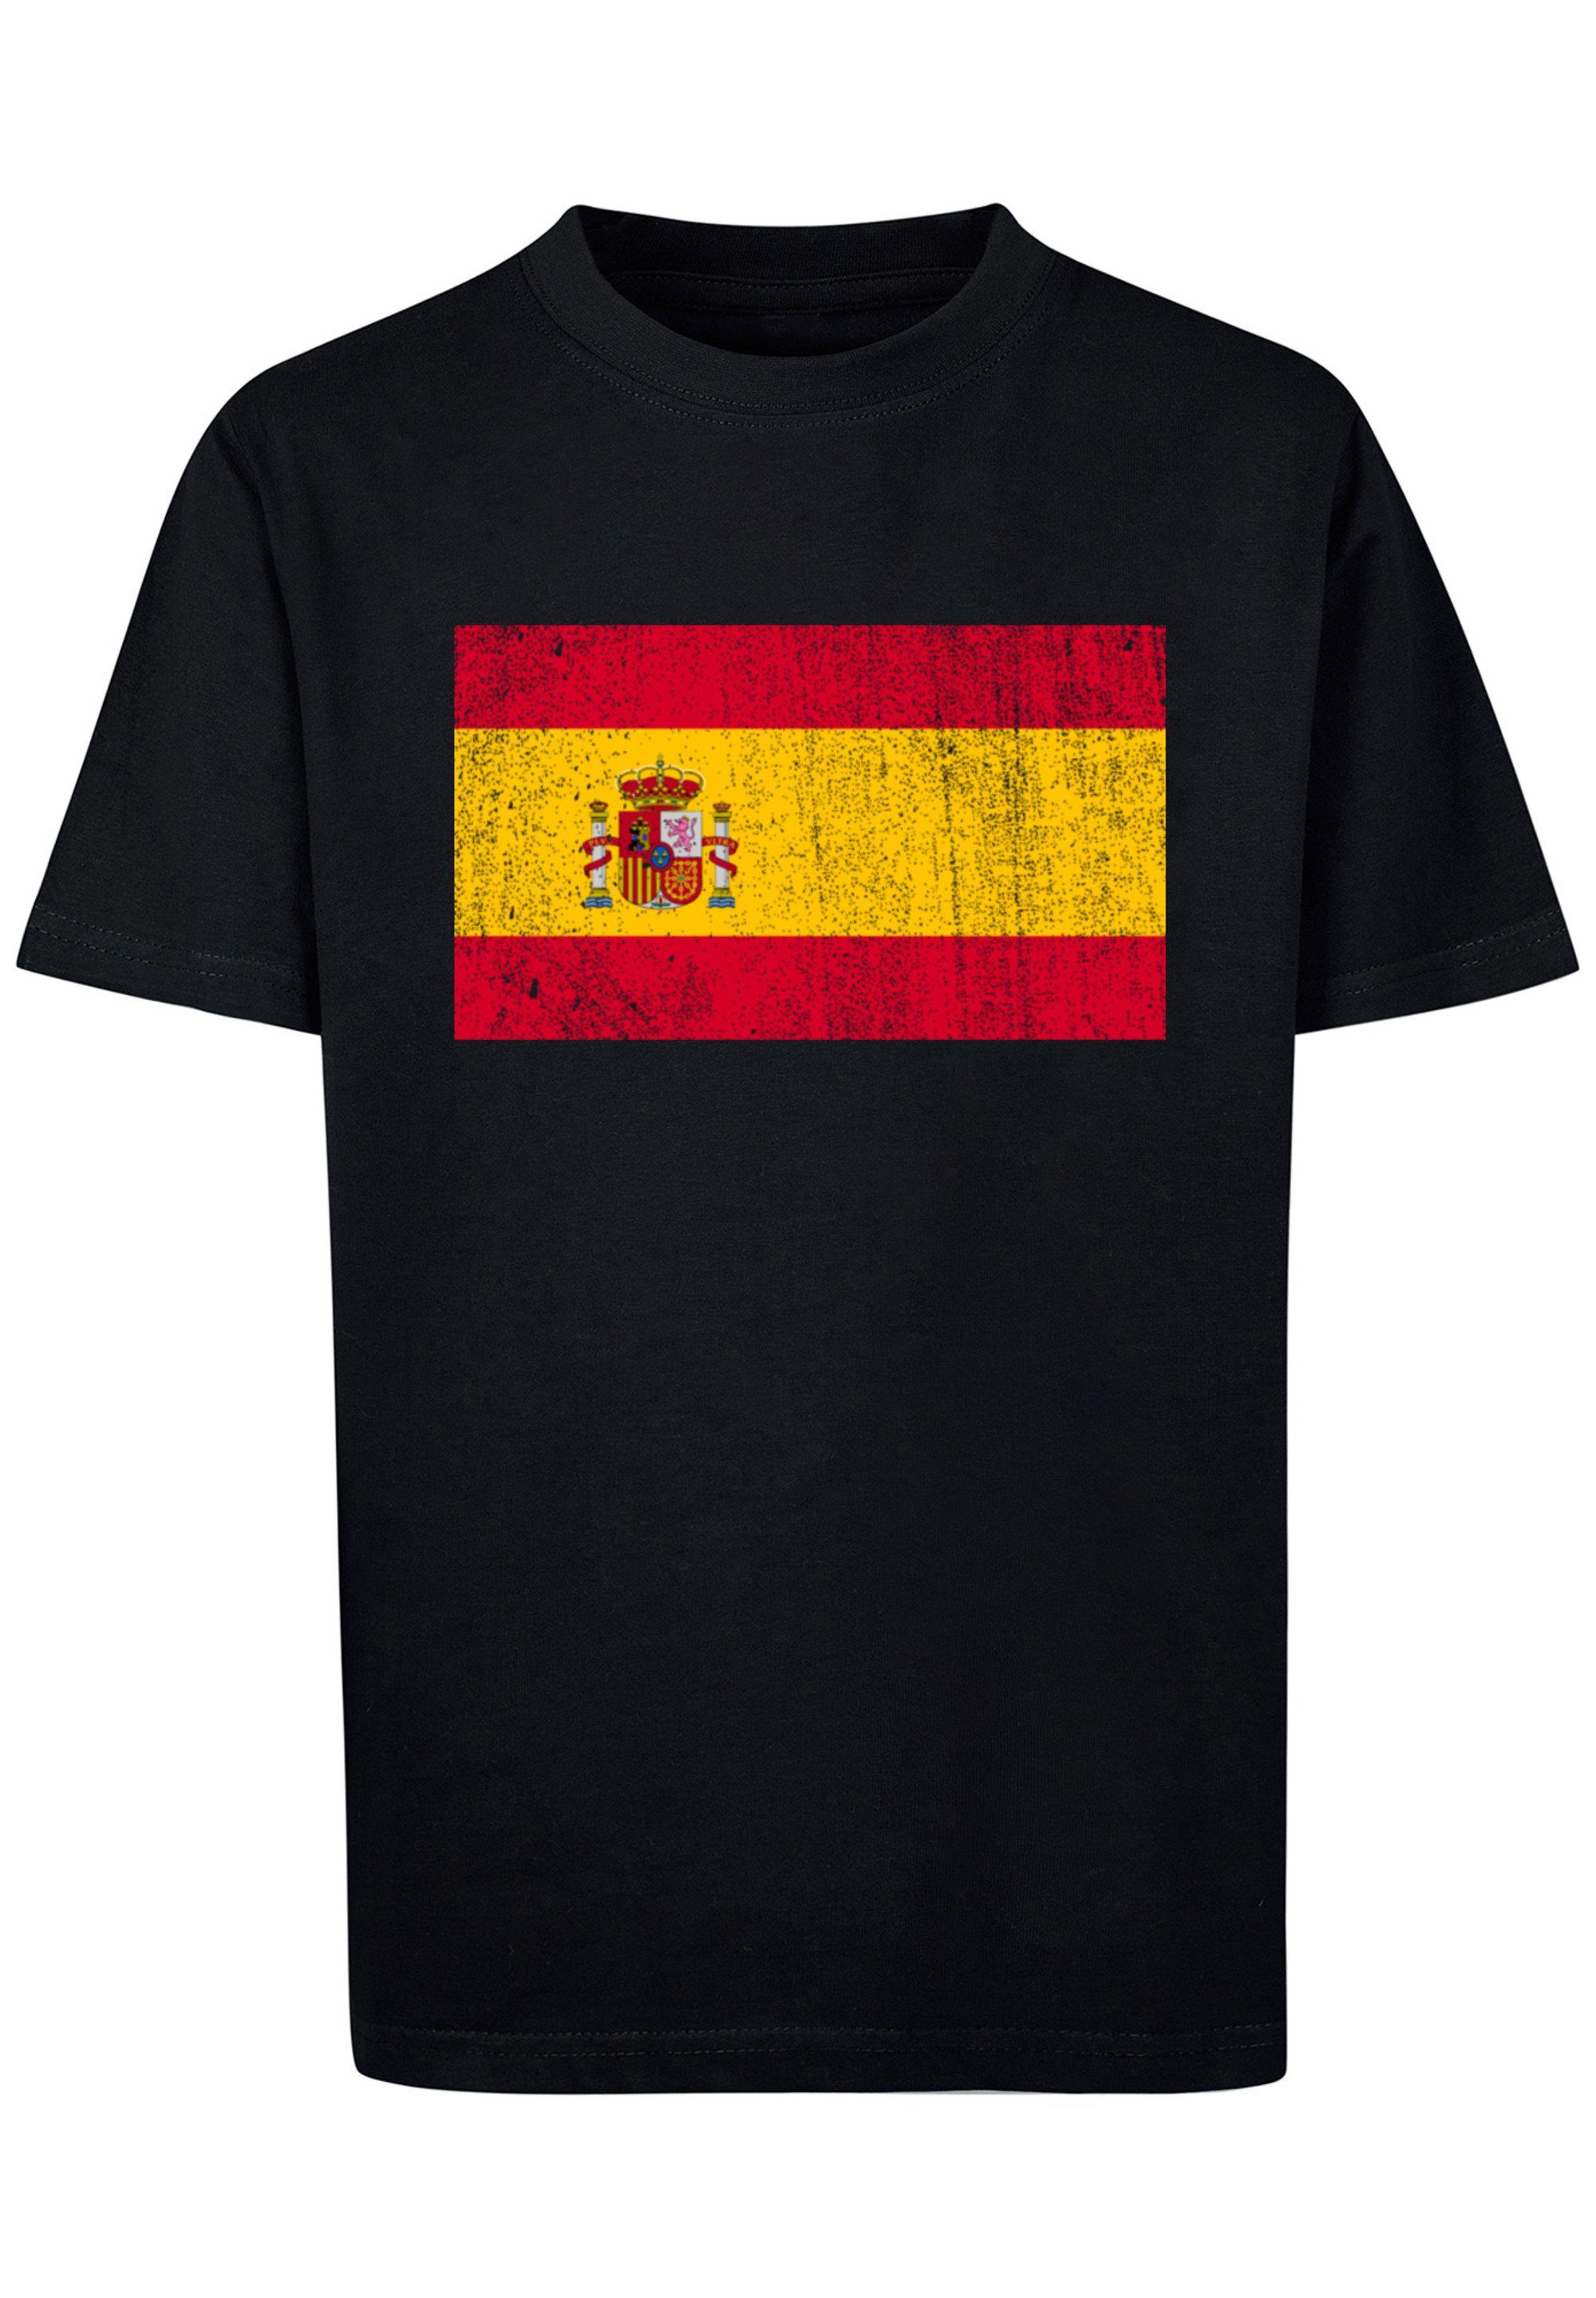 Model Flagge Print, ist F4NT4STIC und groß distressed Das T-Shirt Größe cm Spain Spanien 145 trägt 145/152